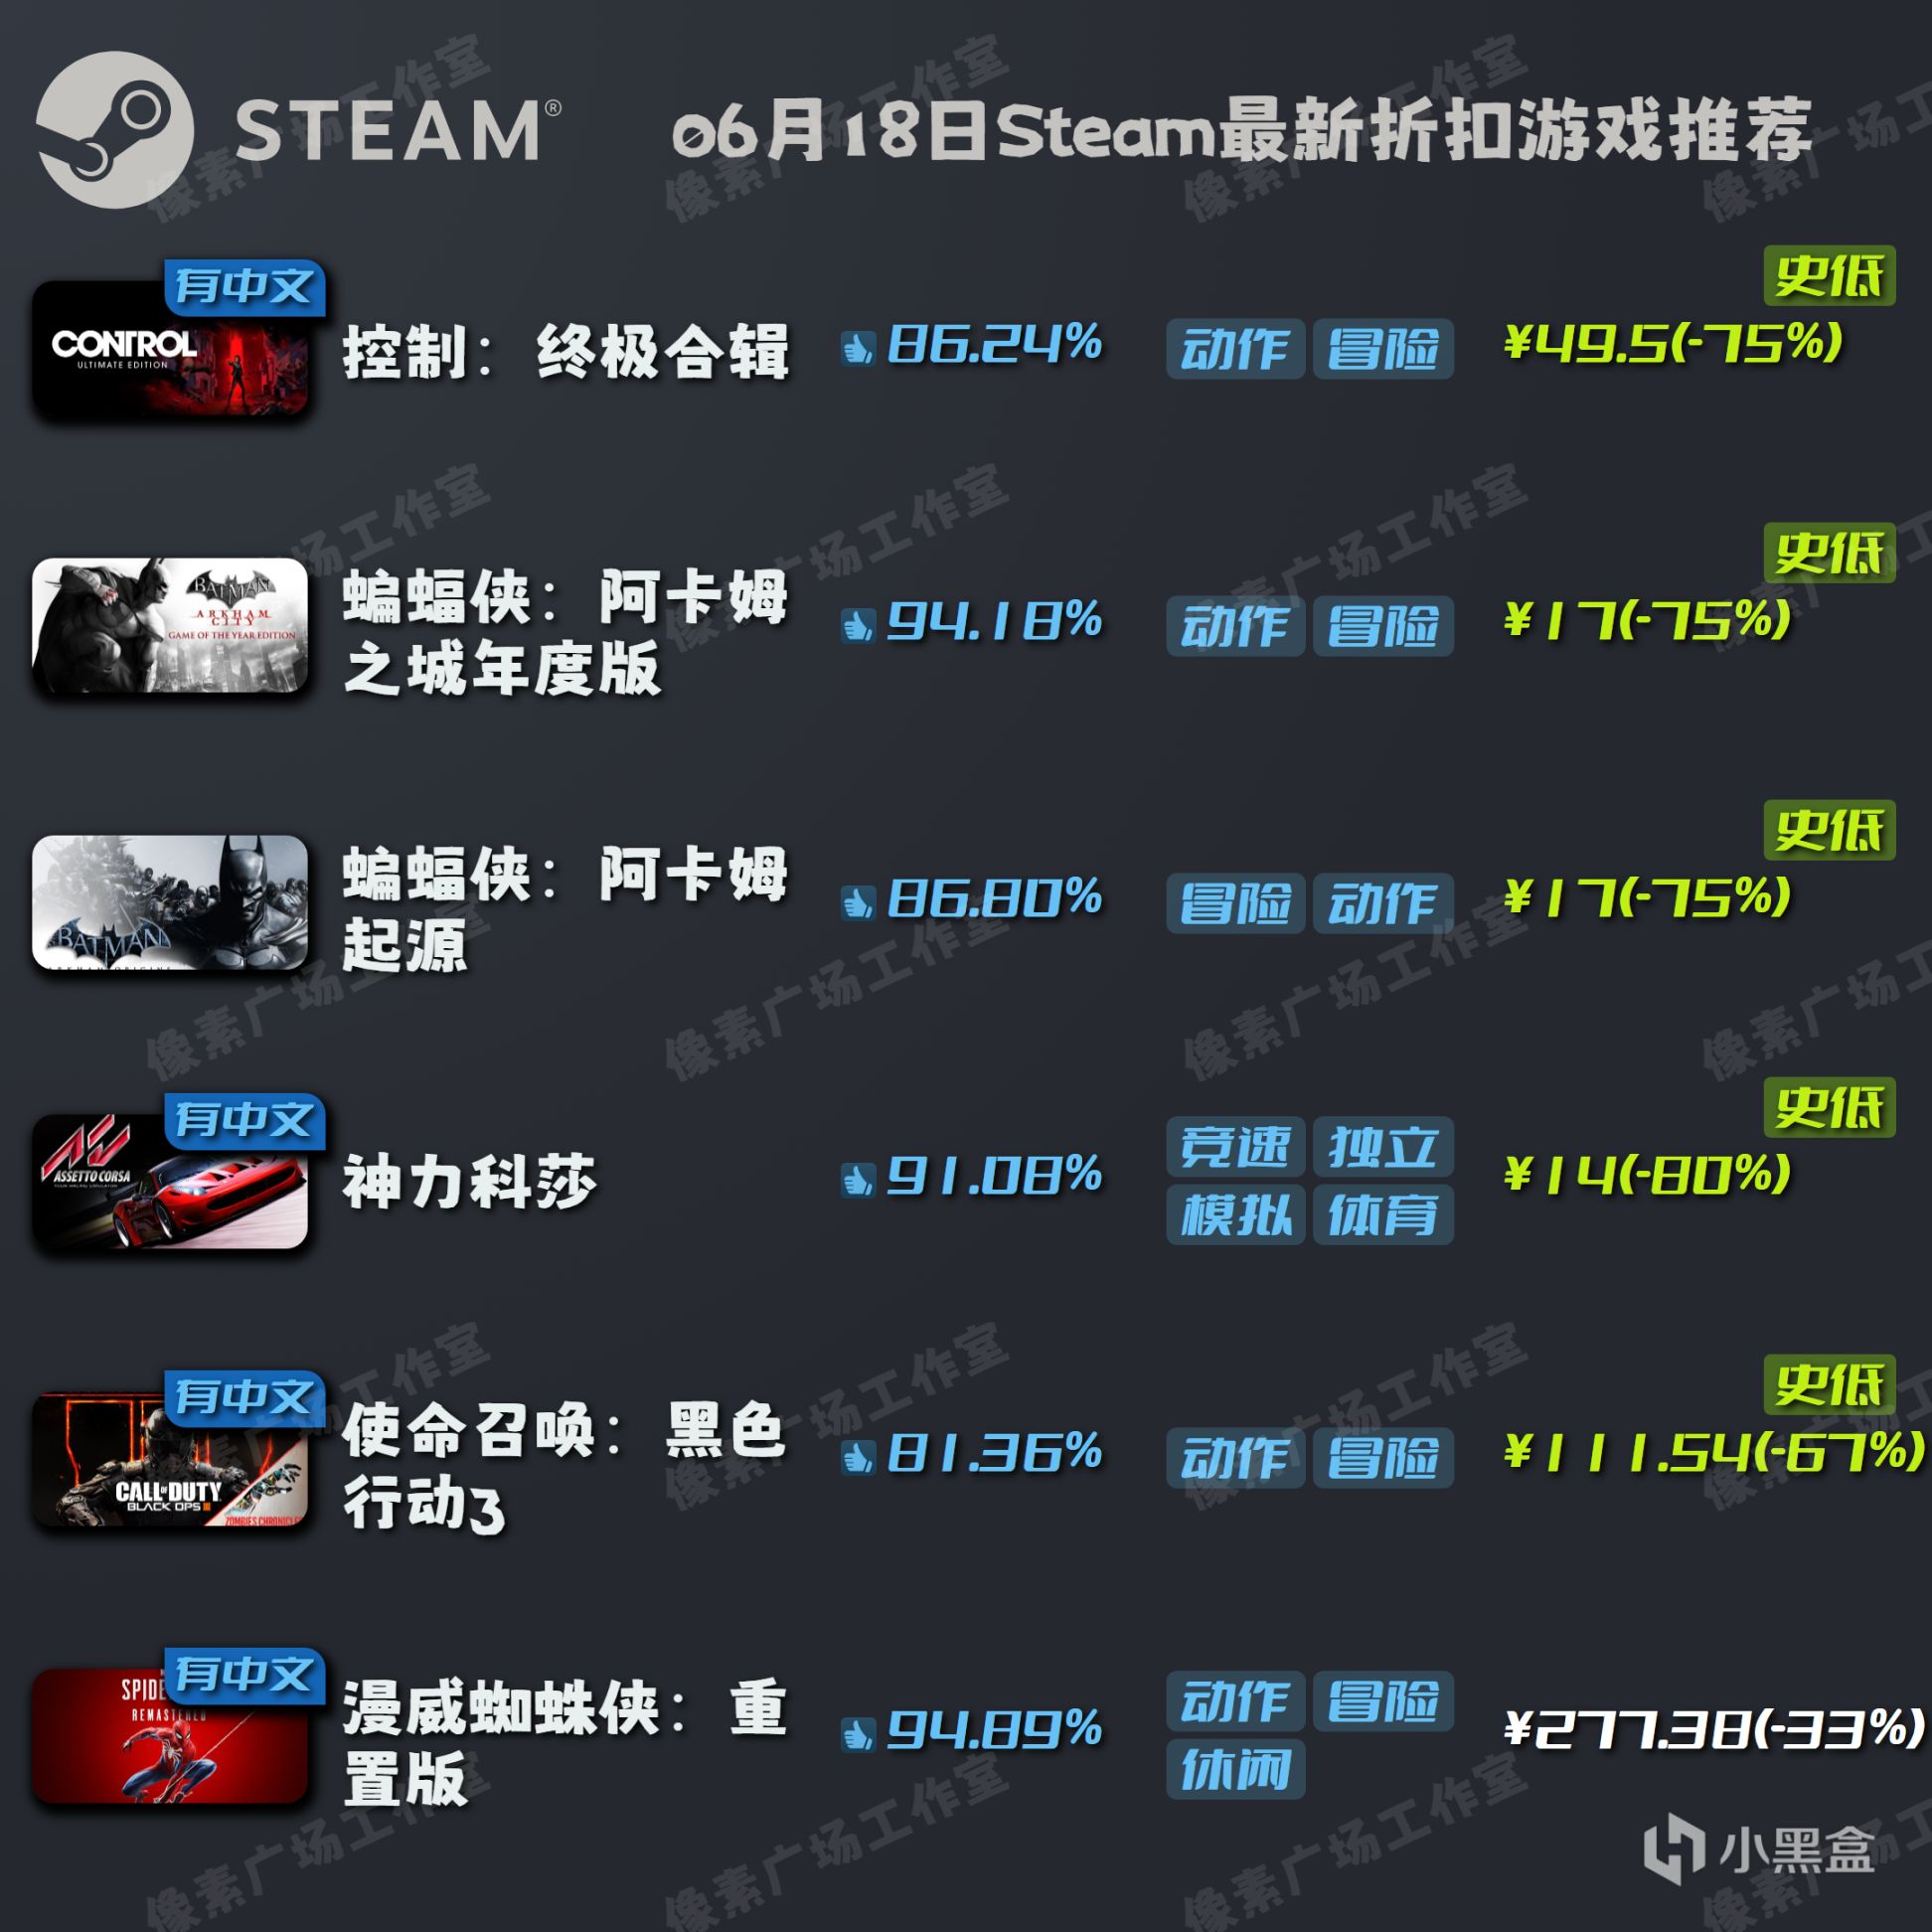 【Steam特惠】6月18日折扣游戏推荐-第0张